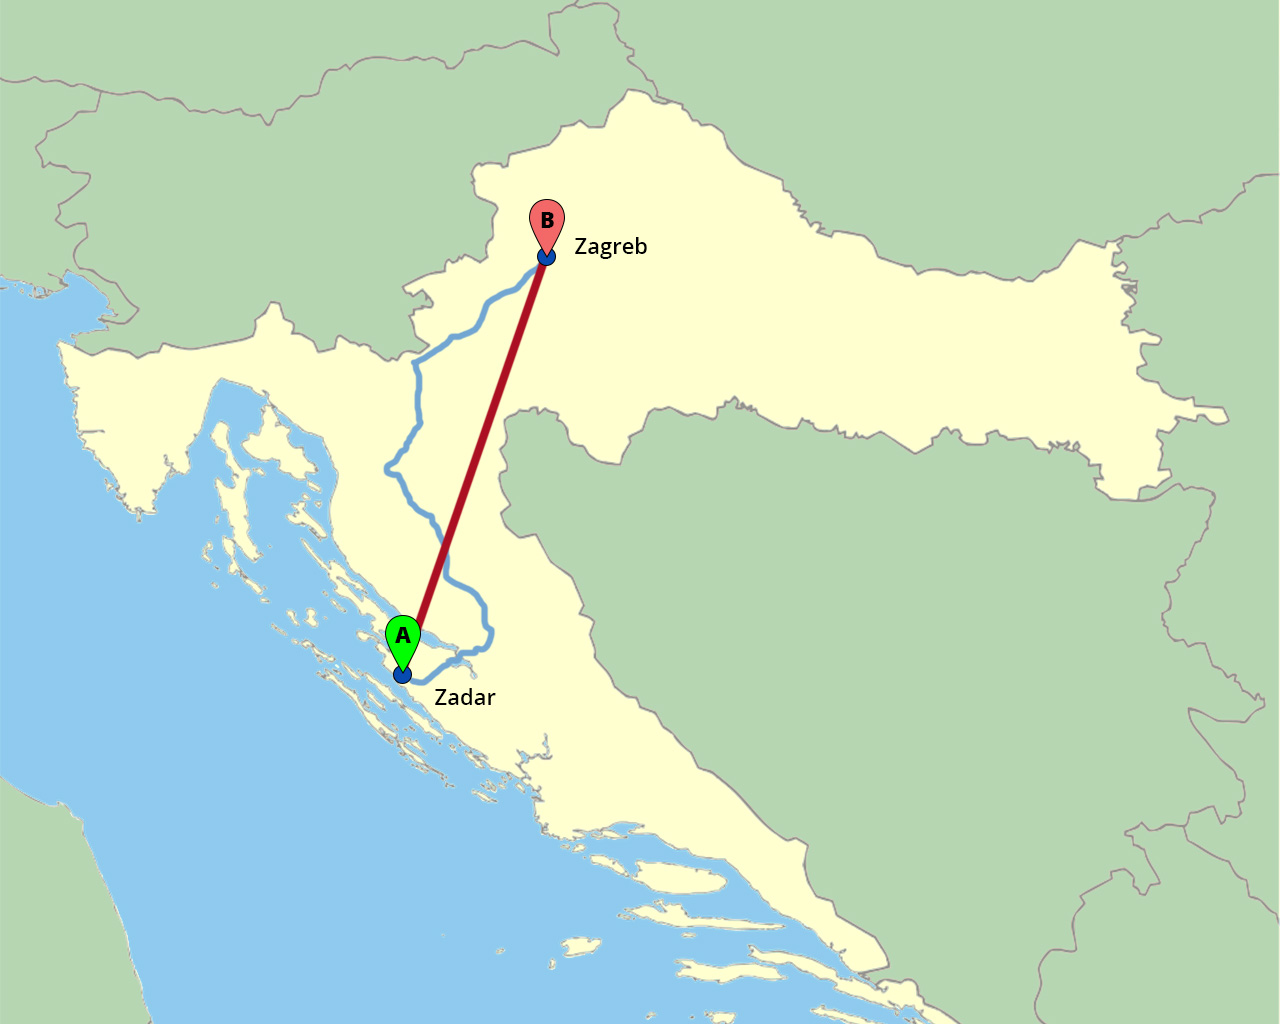 Karta hrvatske s ucrtanim zračnim i kopnenim putem Zagreb - Zadar